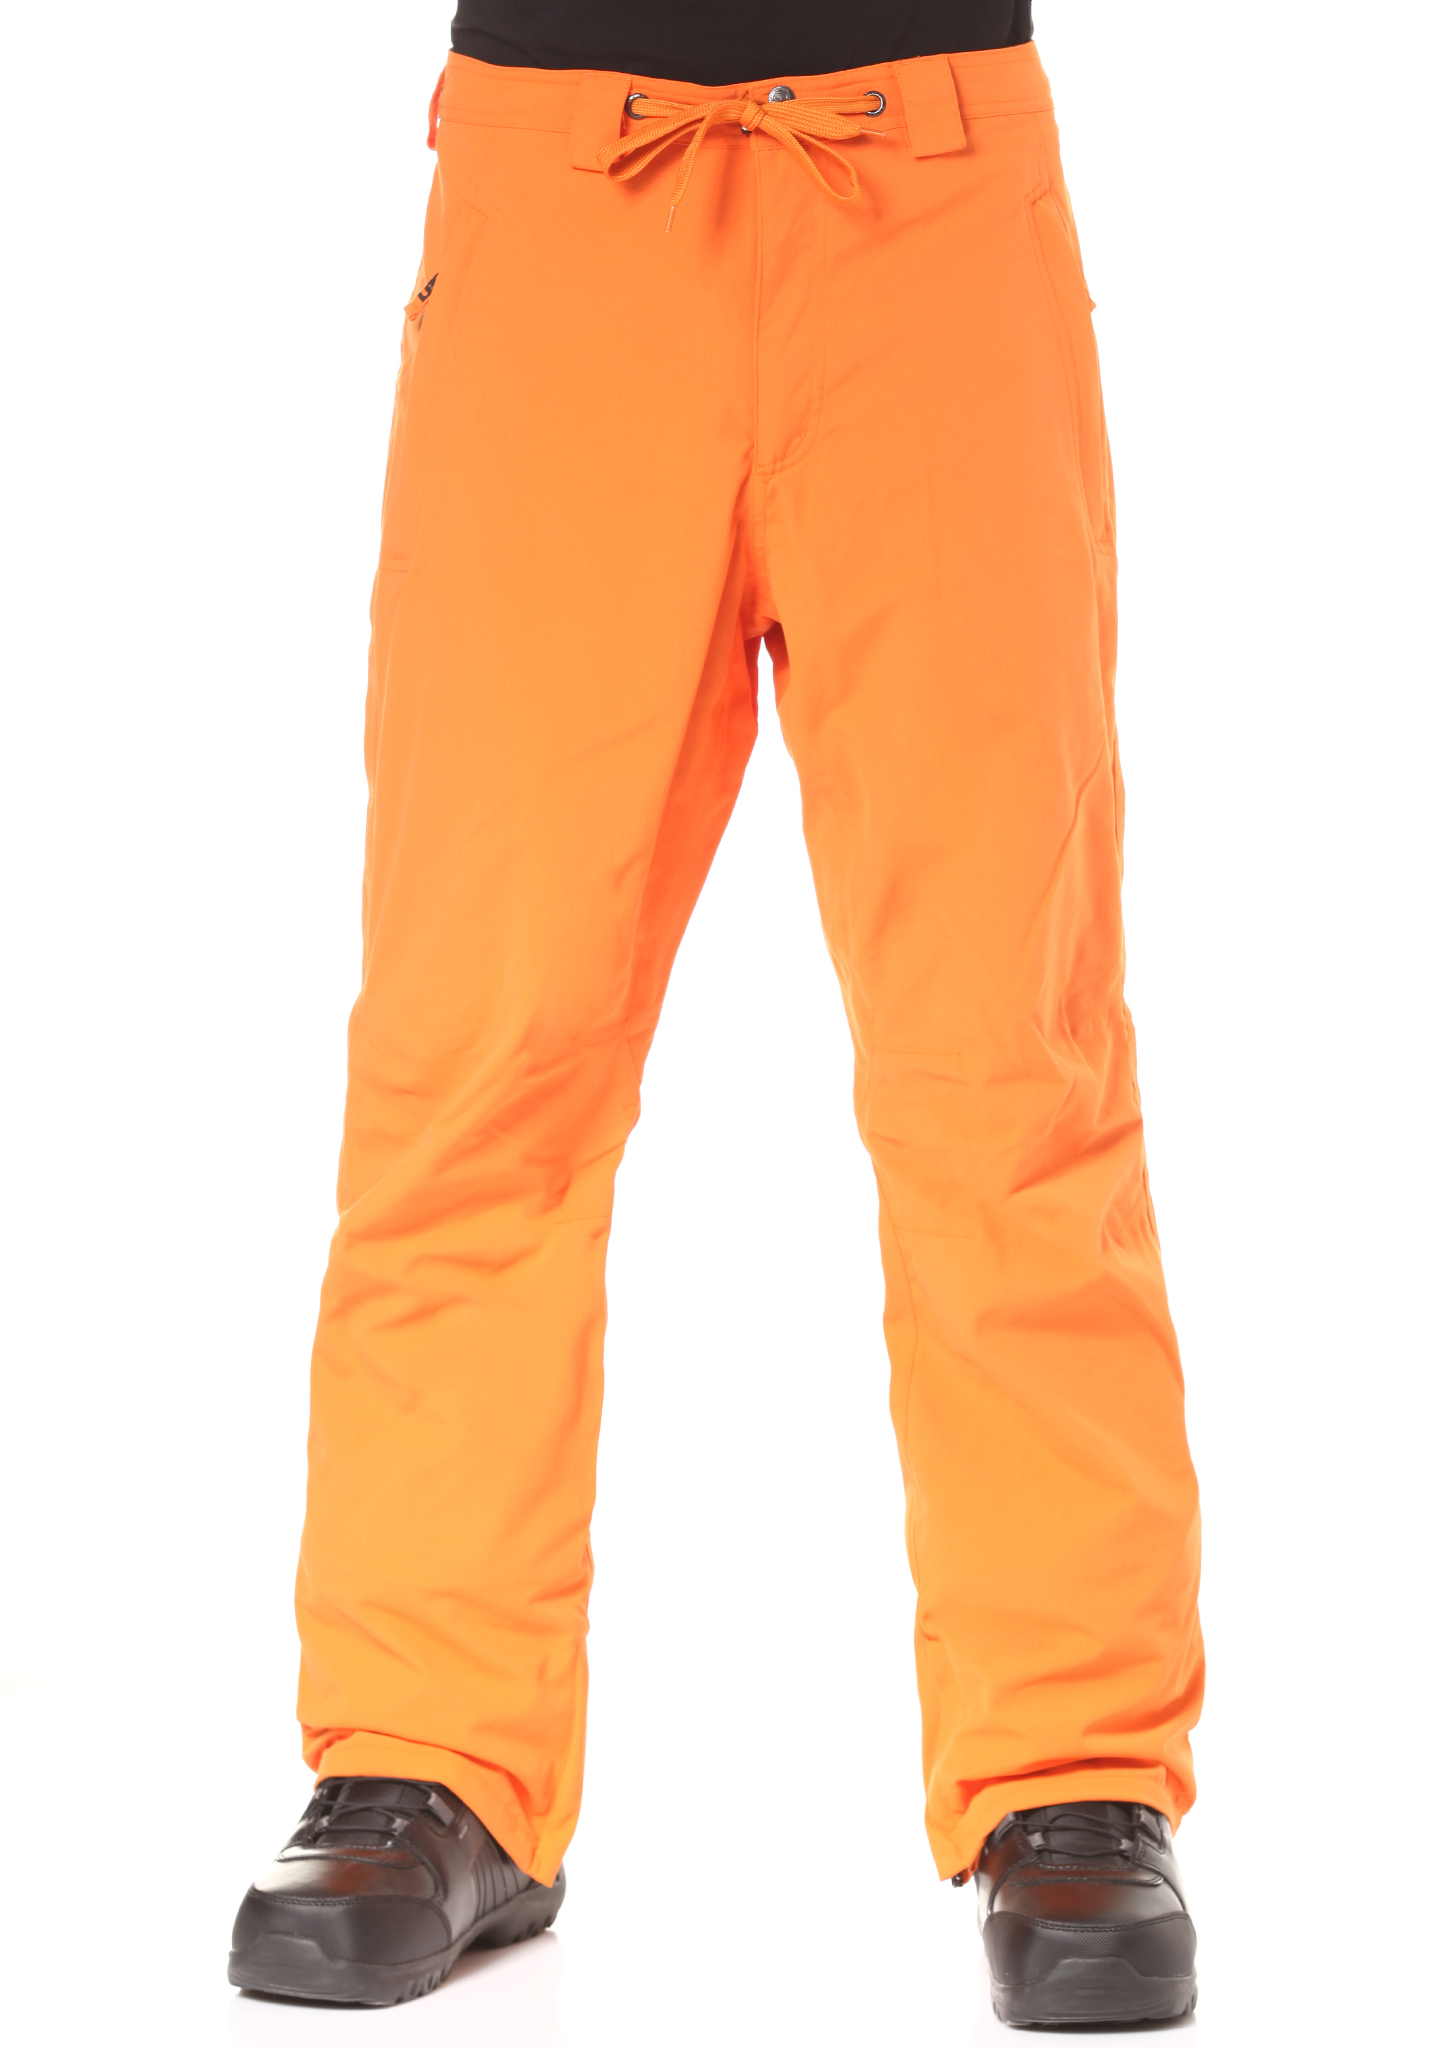 LIGHT Special7 Snowboardhosen orange XL